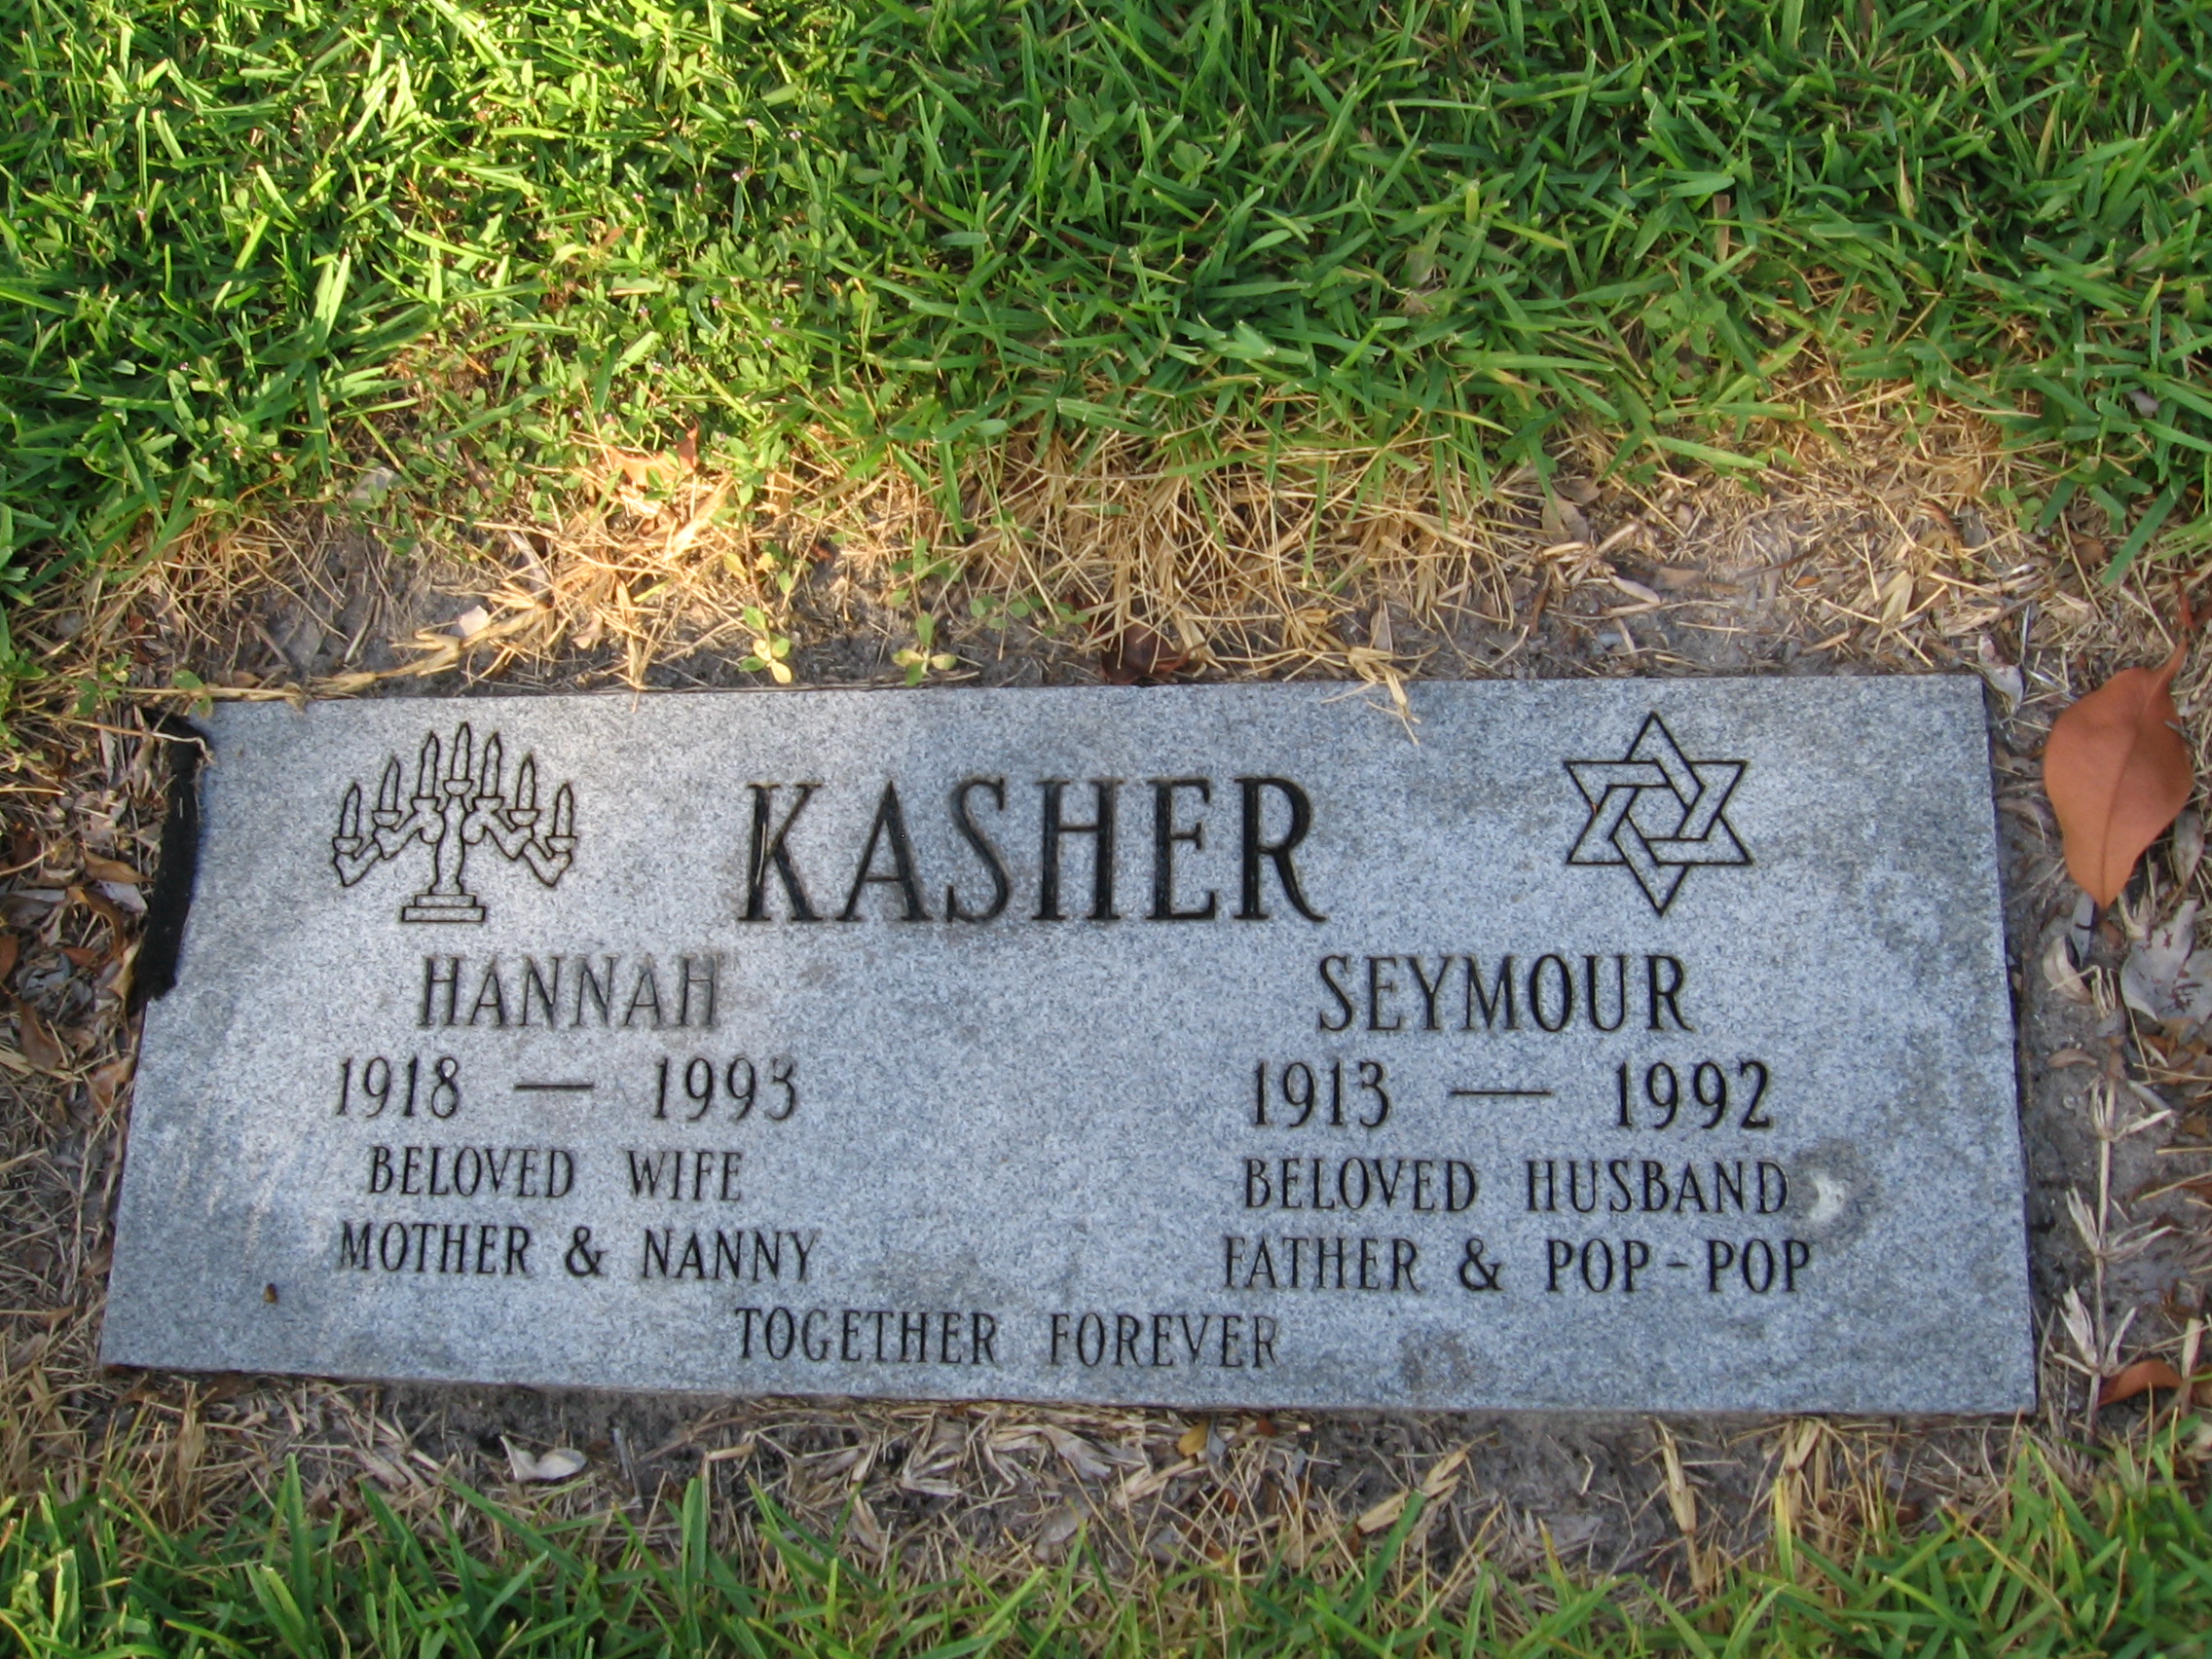 Hannah Kasher